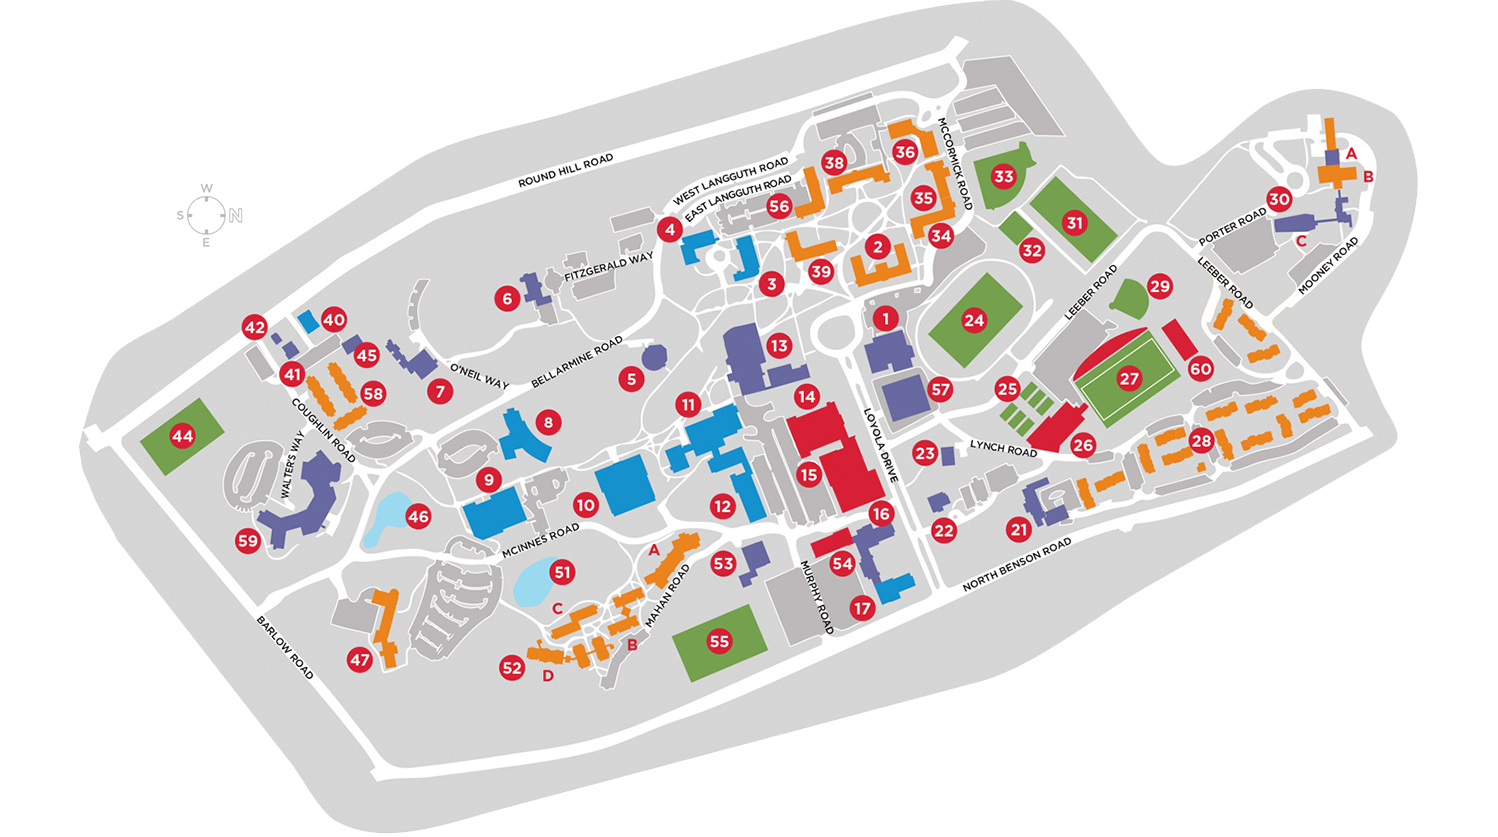 Fairfield U Campus Map.